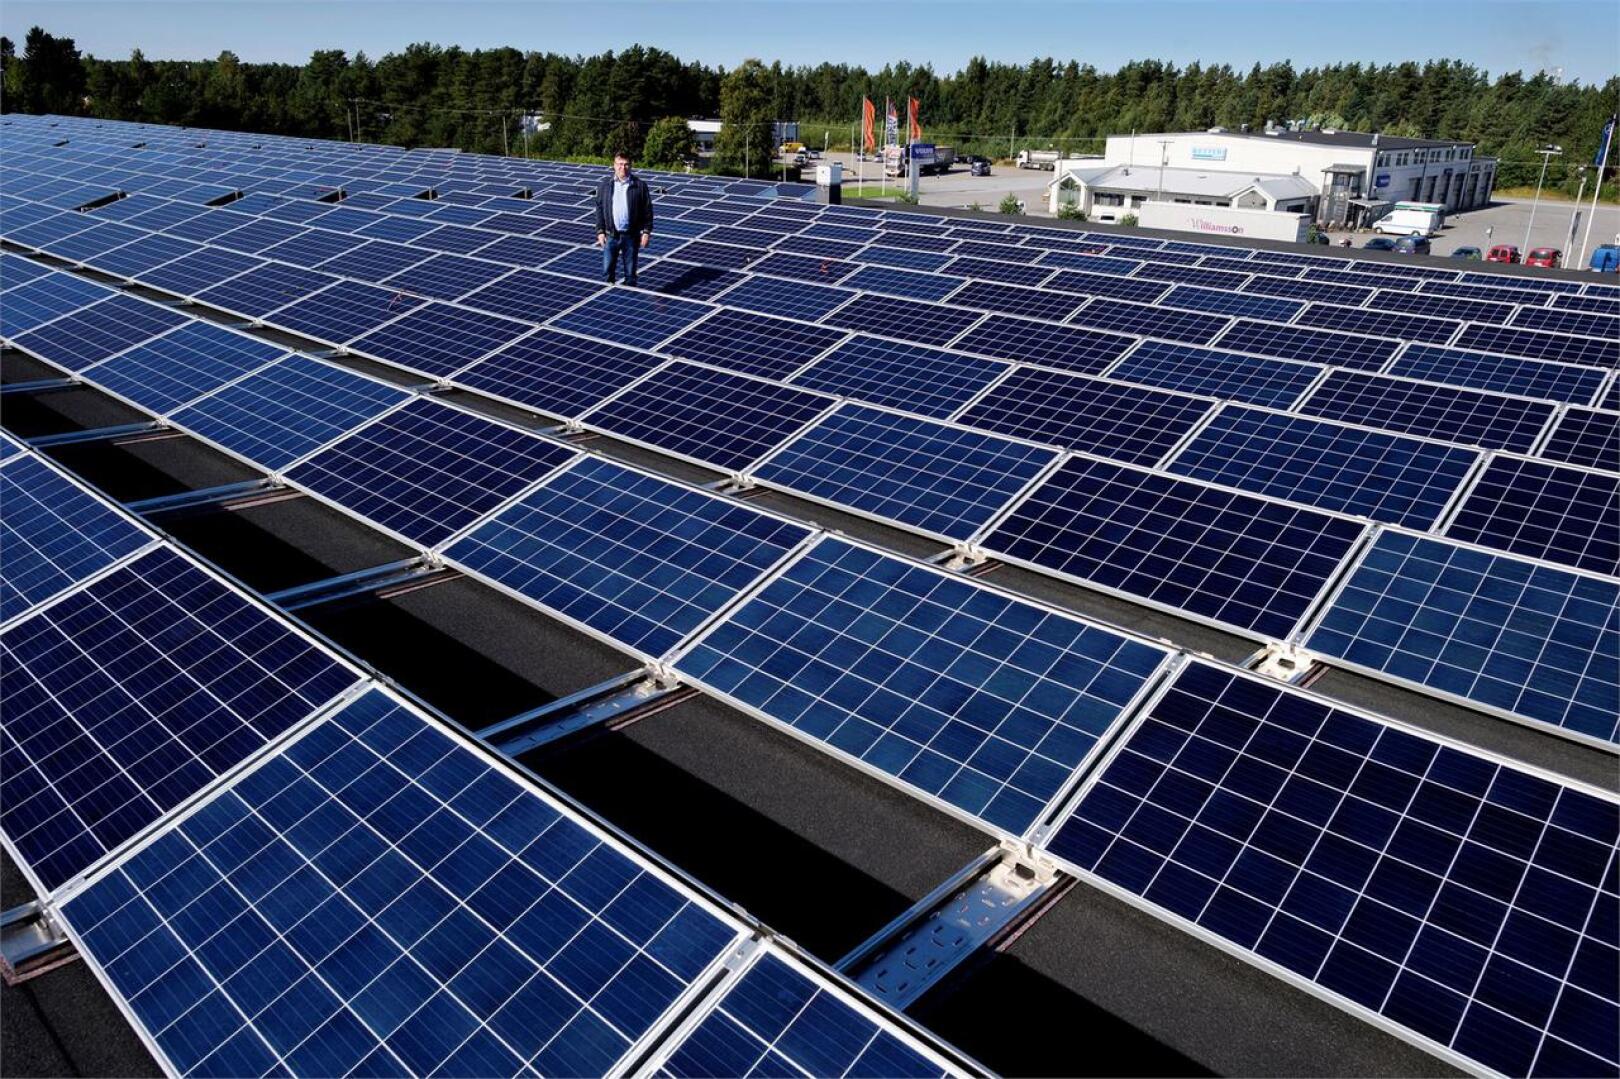 Jänismaalla sijaitsevan keskusvaraston aurinkosähköjärjestelmän on toimittanut suomalainen energiayhtiö Solarigo Systems, kertoo Halpa-Hallin varatoimitusjohtaja Ari Isohella.